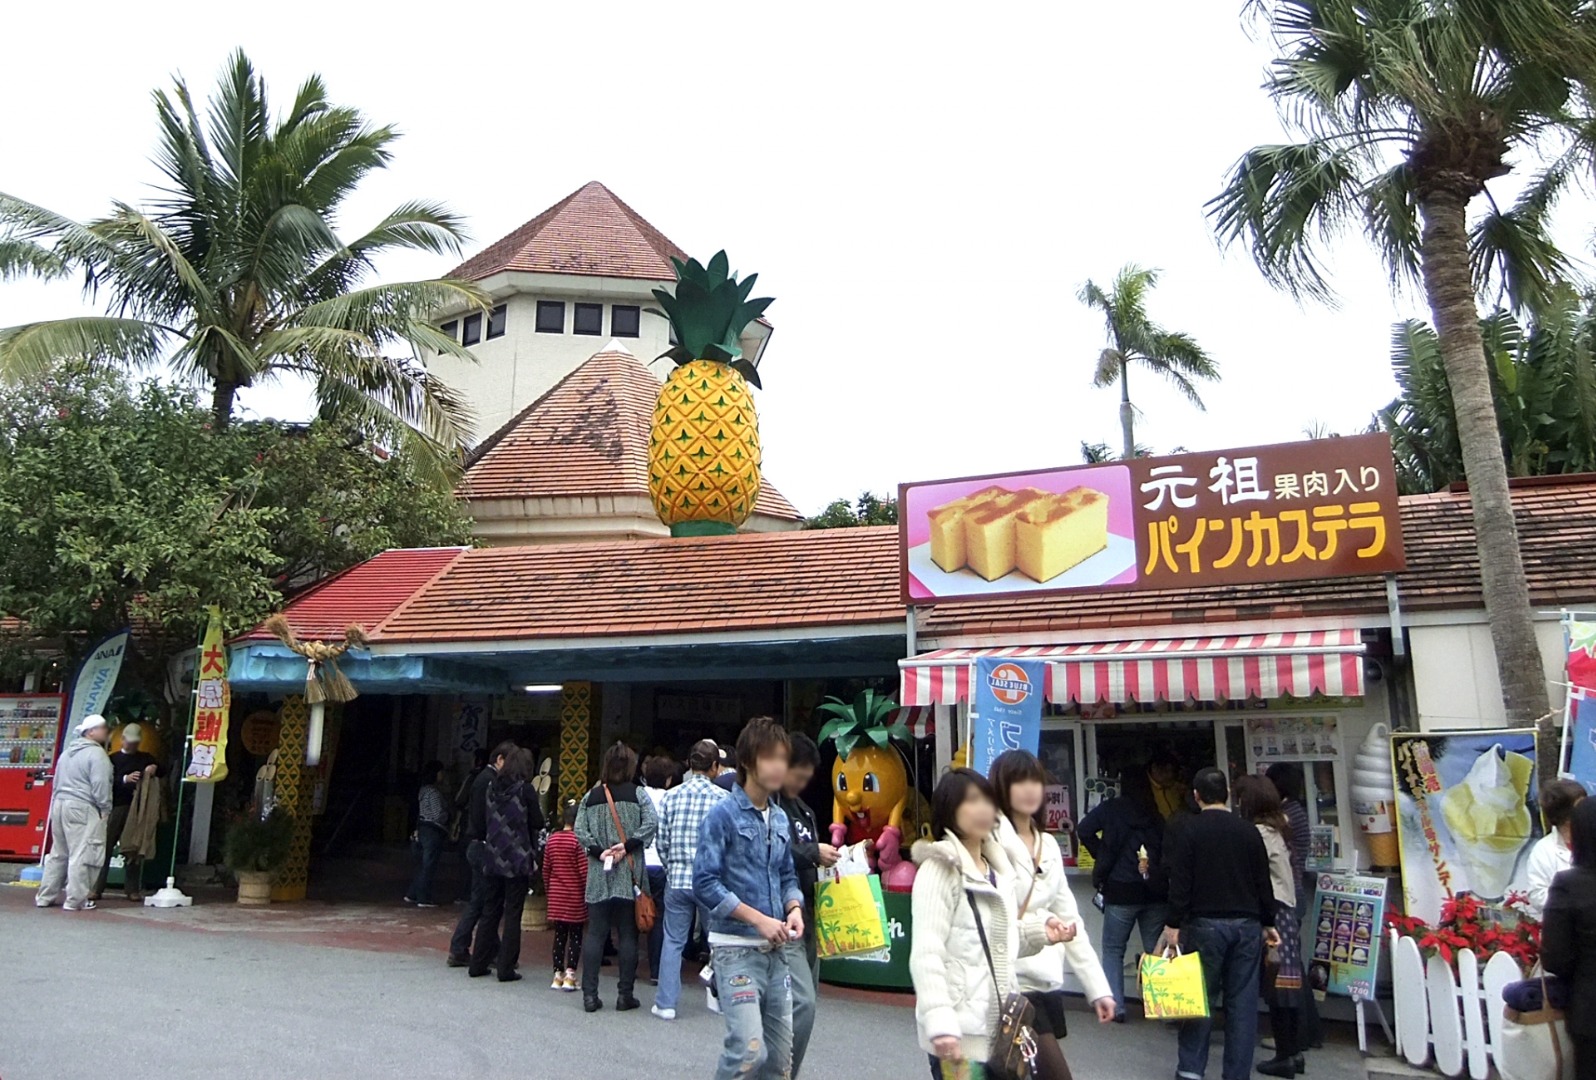 สวนสับปะรดนาโกะ (ナゴパイナップルパーク)